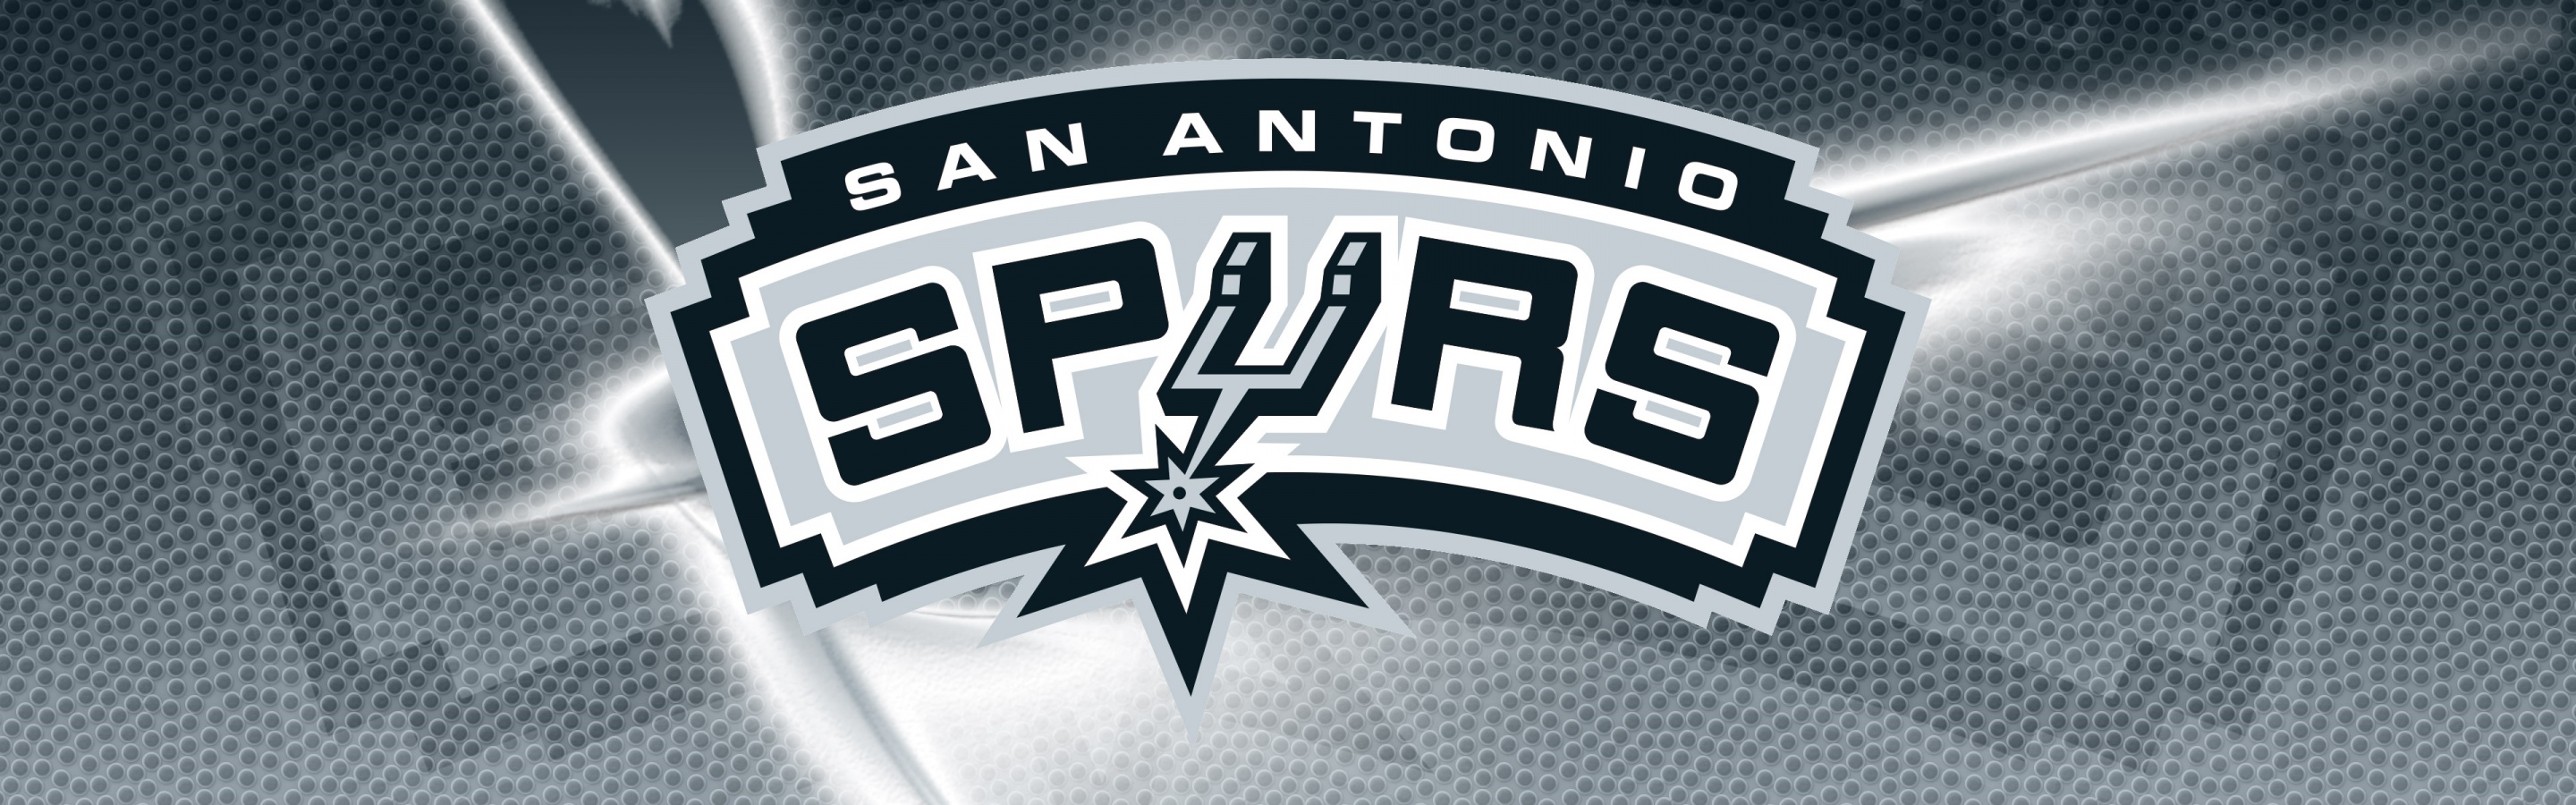 San Antonio Spurs 2014 Logo